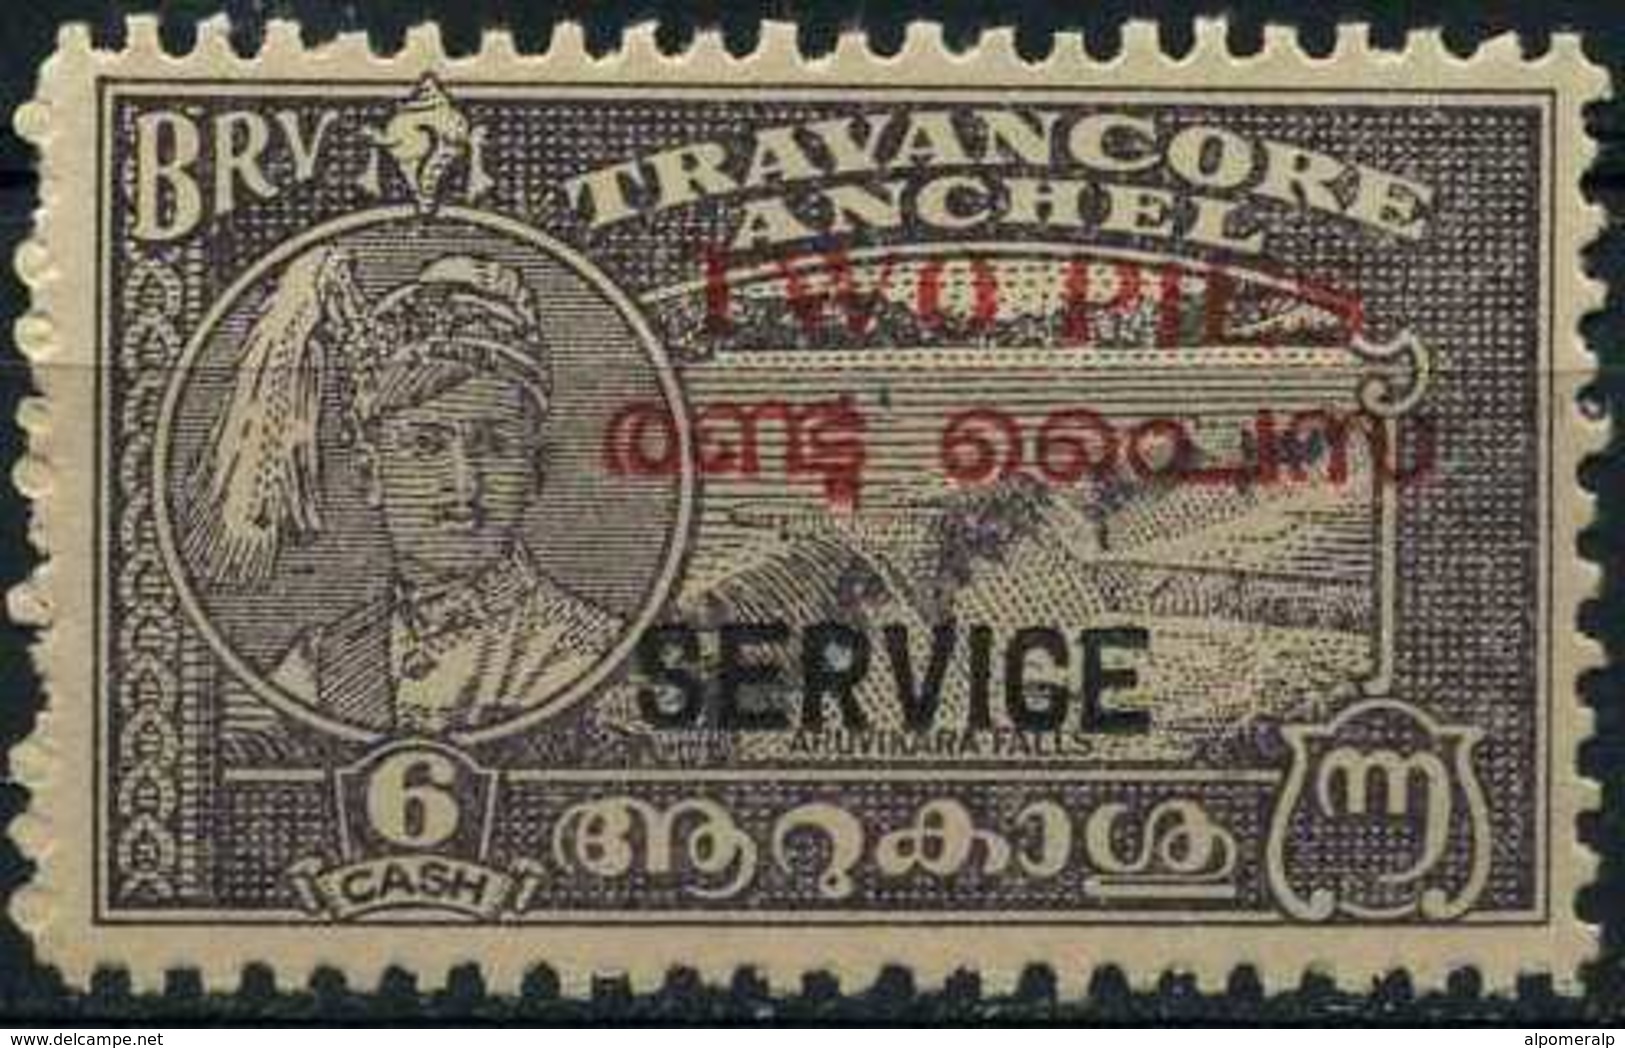 India / Travancore Cochin 1949  Mi 1 (44), "TWO PIES / SERVICE" No GUM - Travancore-Cochin